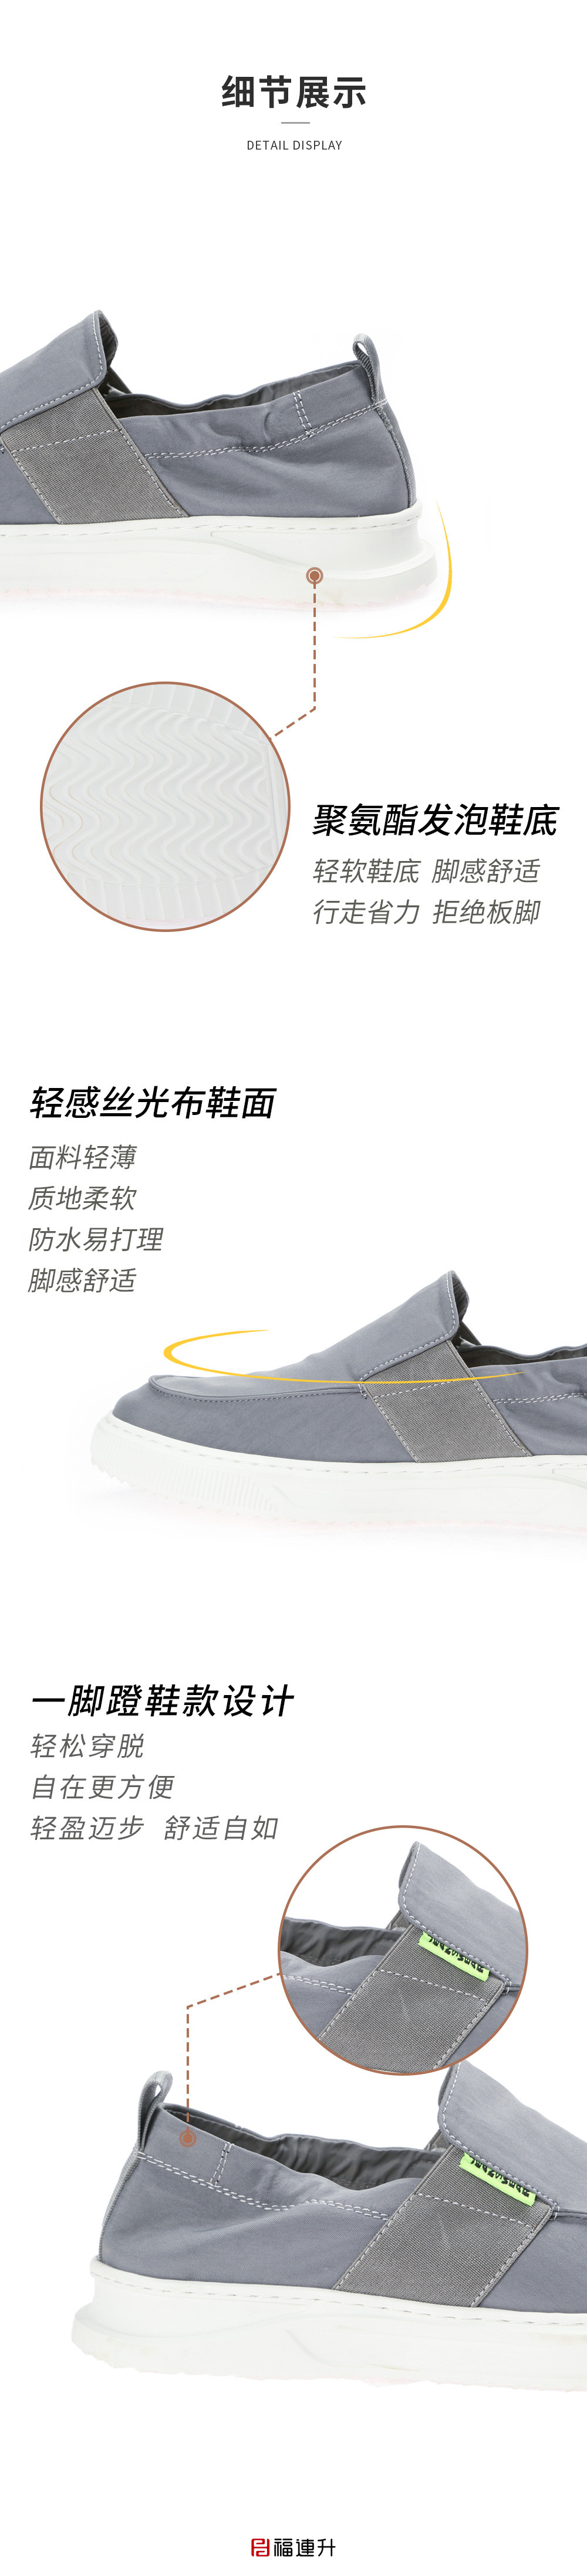 福连升男鞋夏季休闲透气帆布鞋便一脚蹬懒人鞋舒适板鞋(图3)